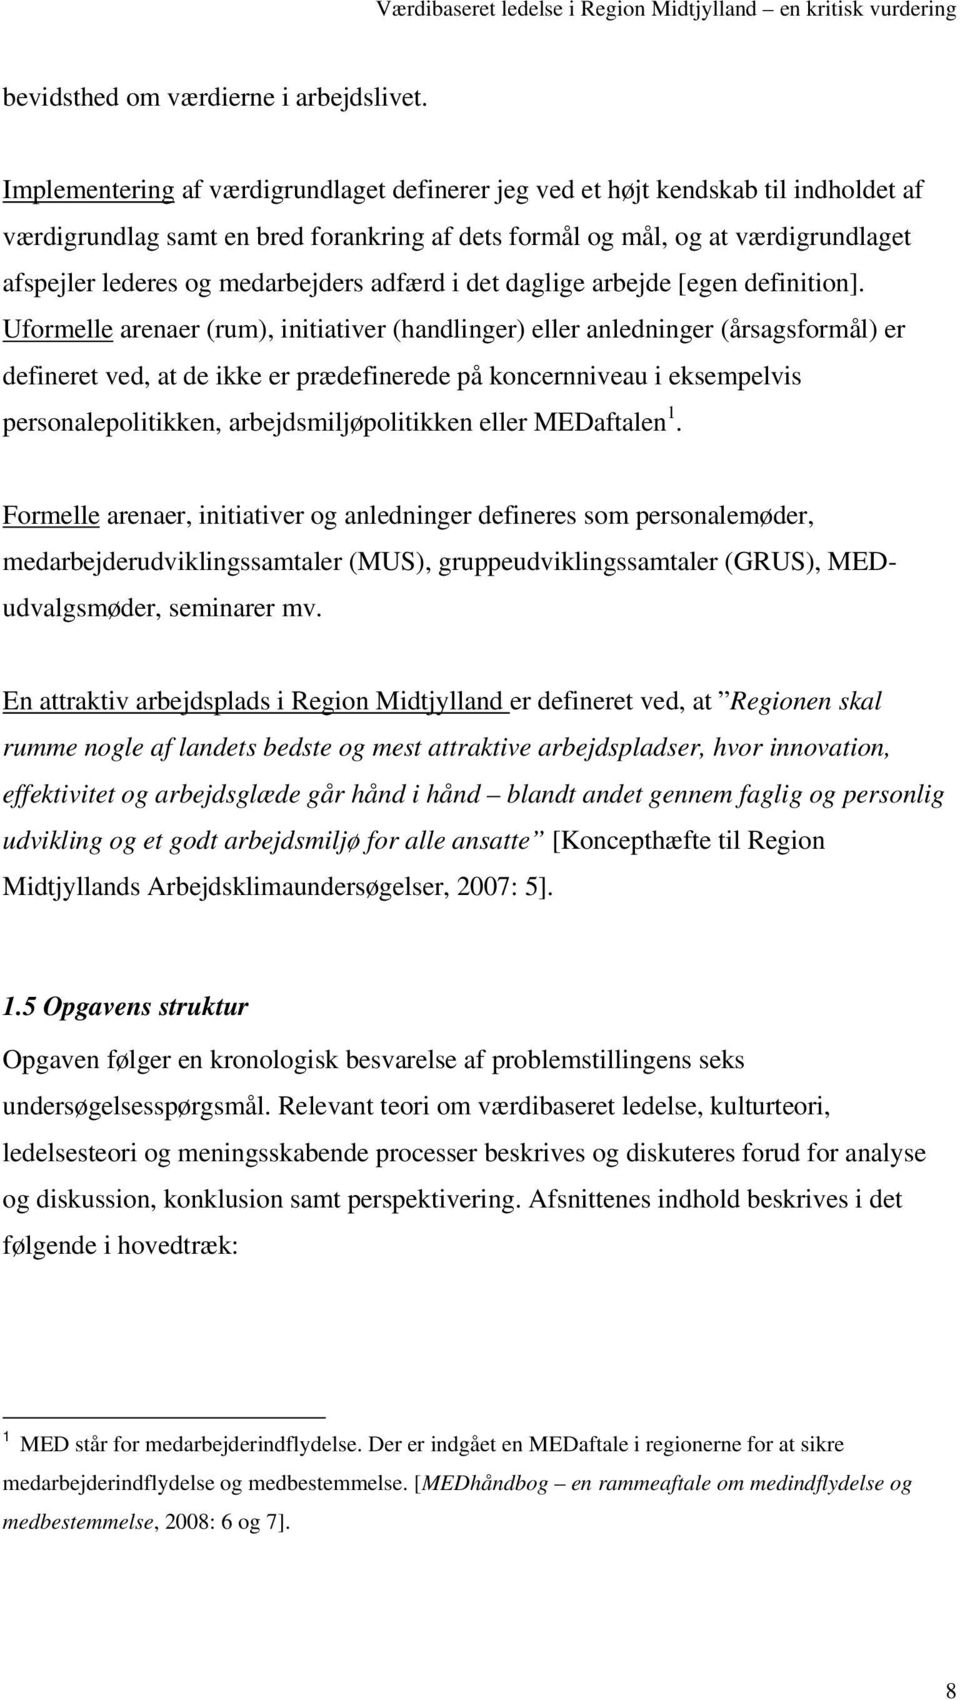 Værdibaseret ledelse. Region Midtjylland en kritisk vurdering - PDF Free  Download